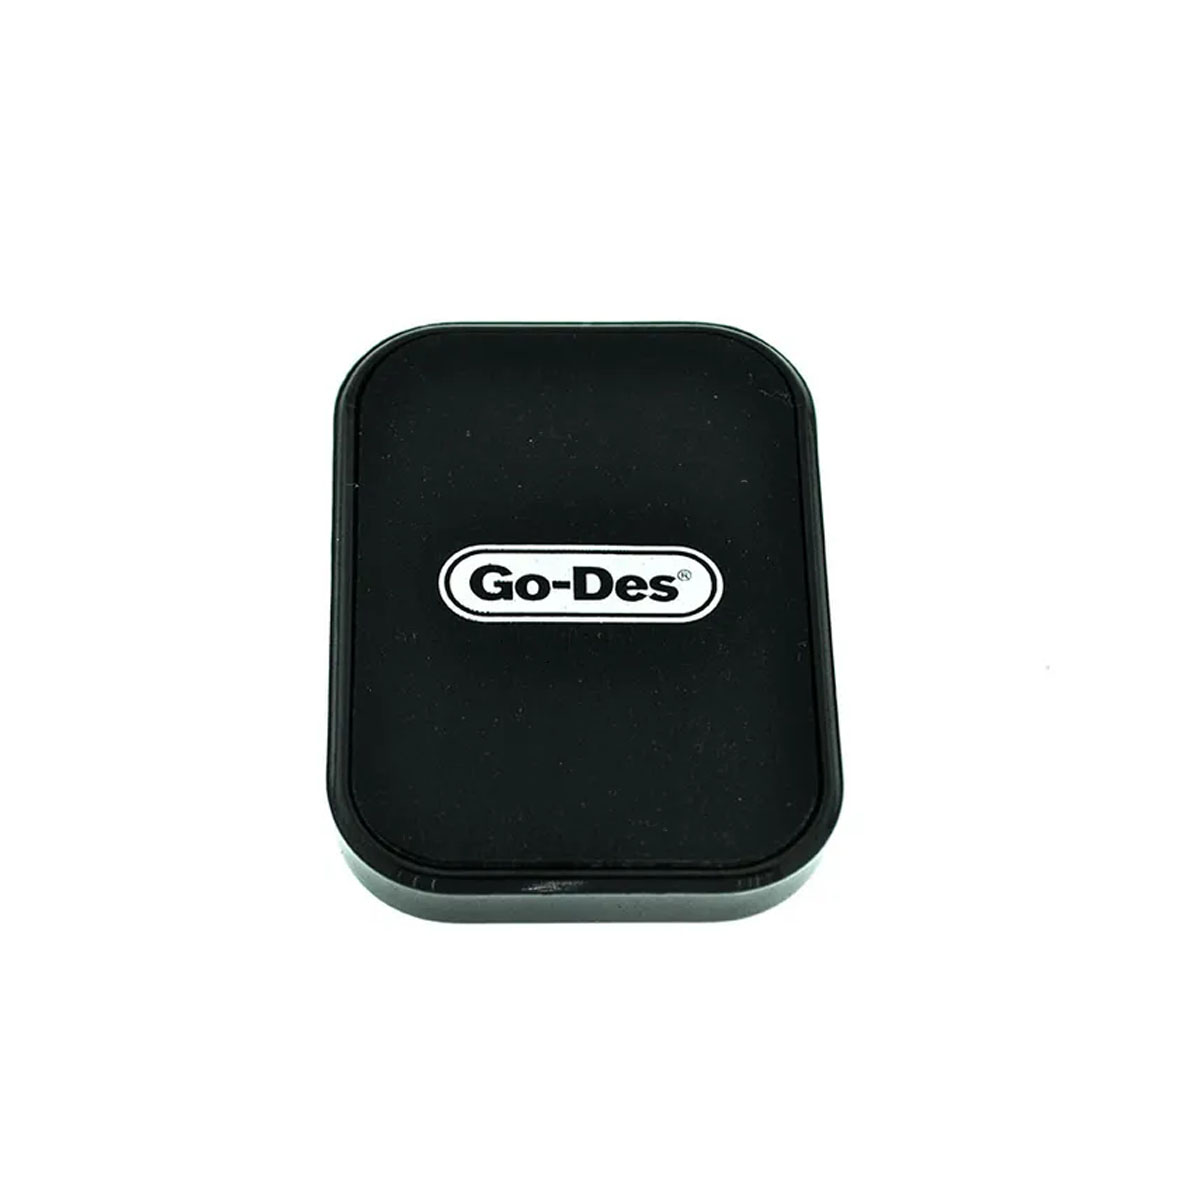 Автомобильный магнитный держатель GO-DES GO-HD612, GD-HD612, для смартфона, цвет черный